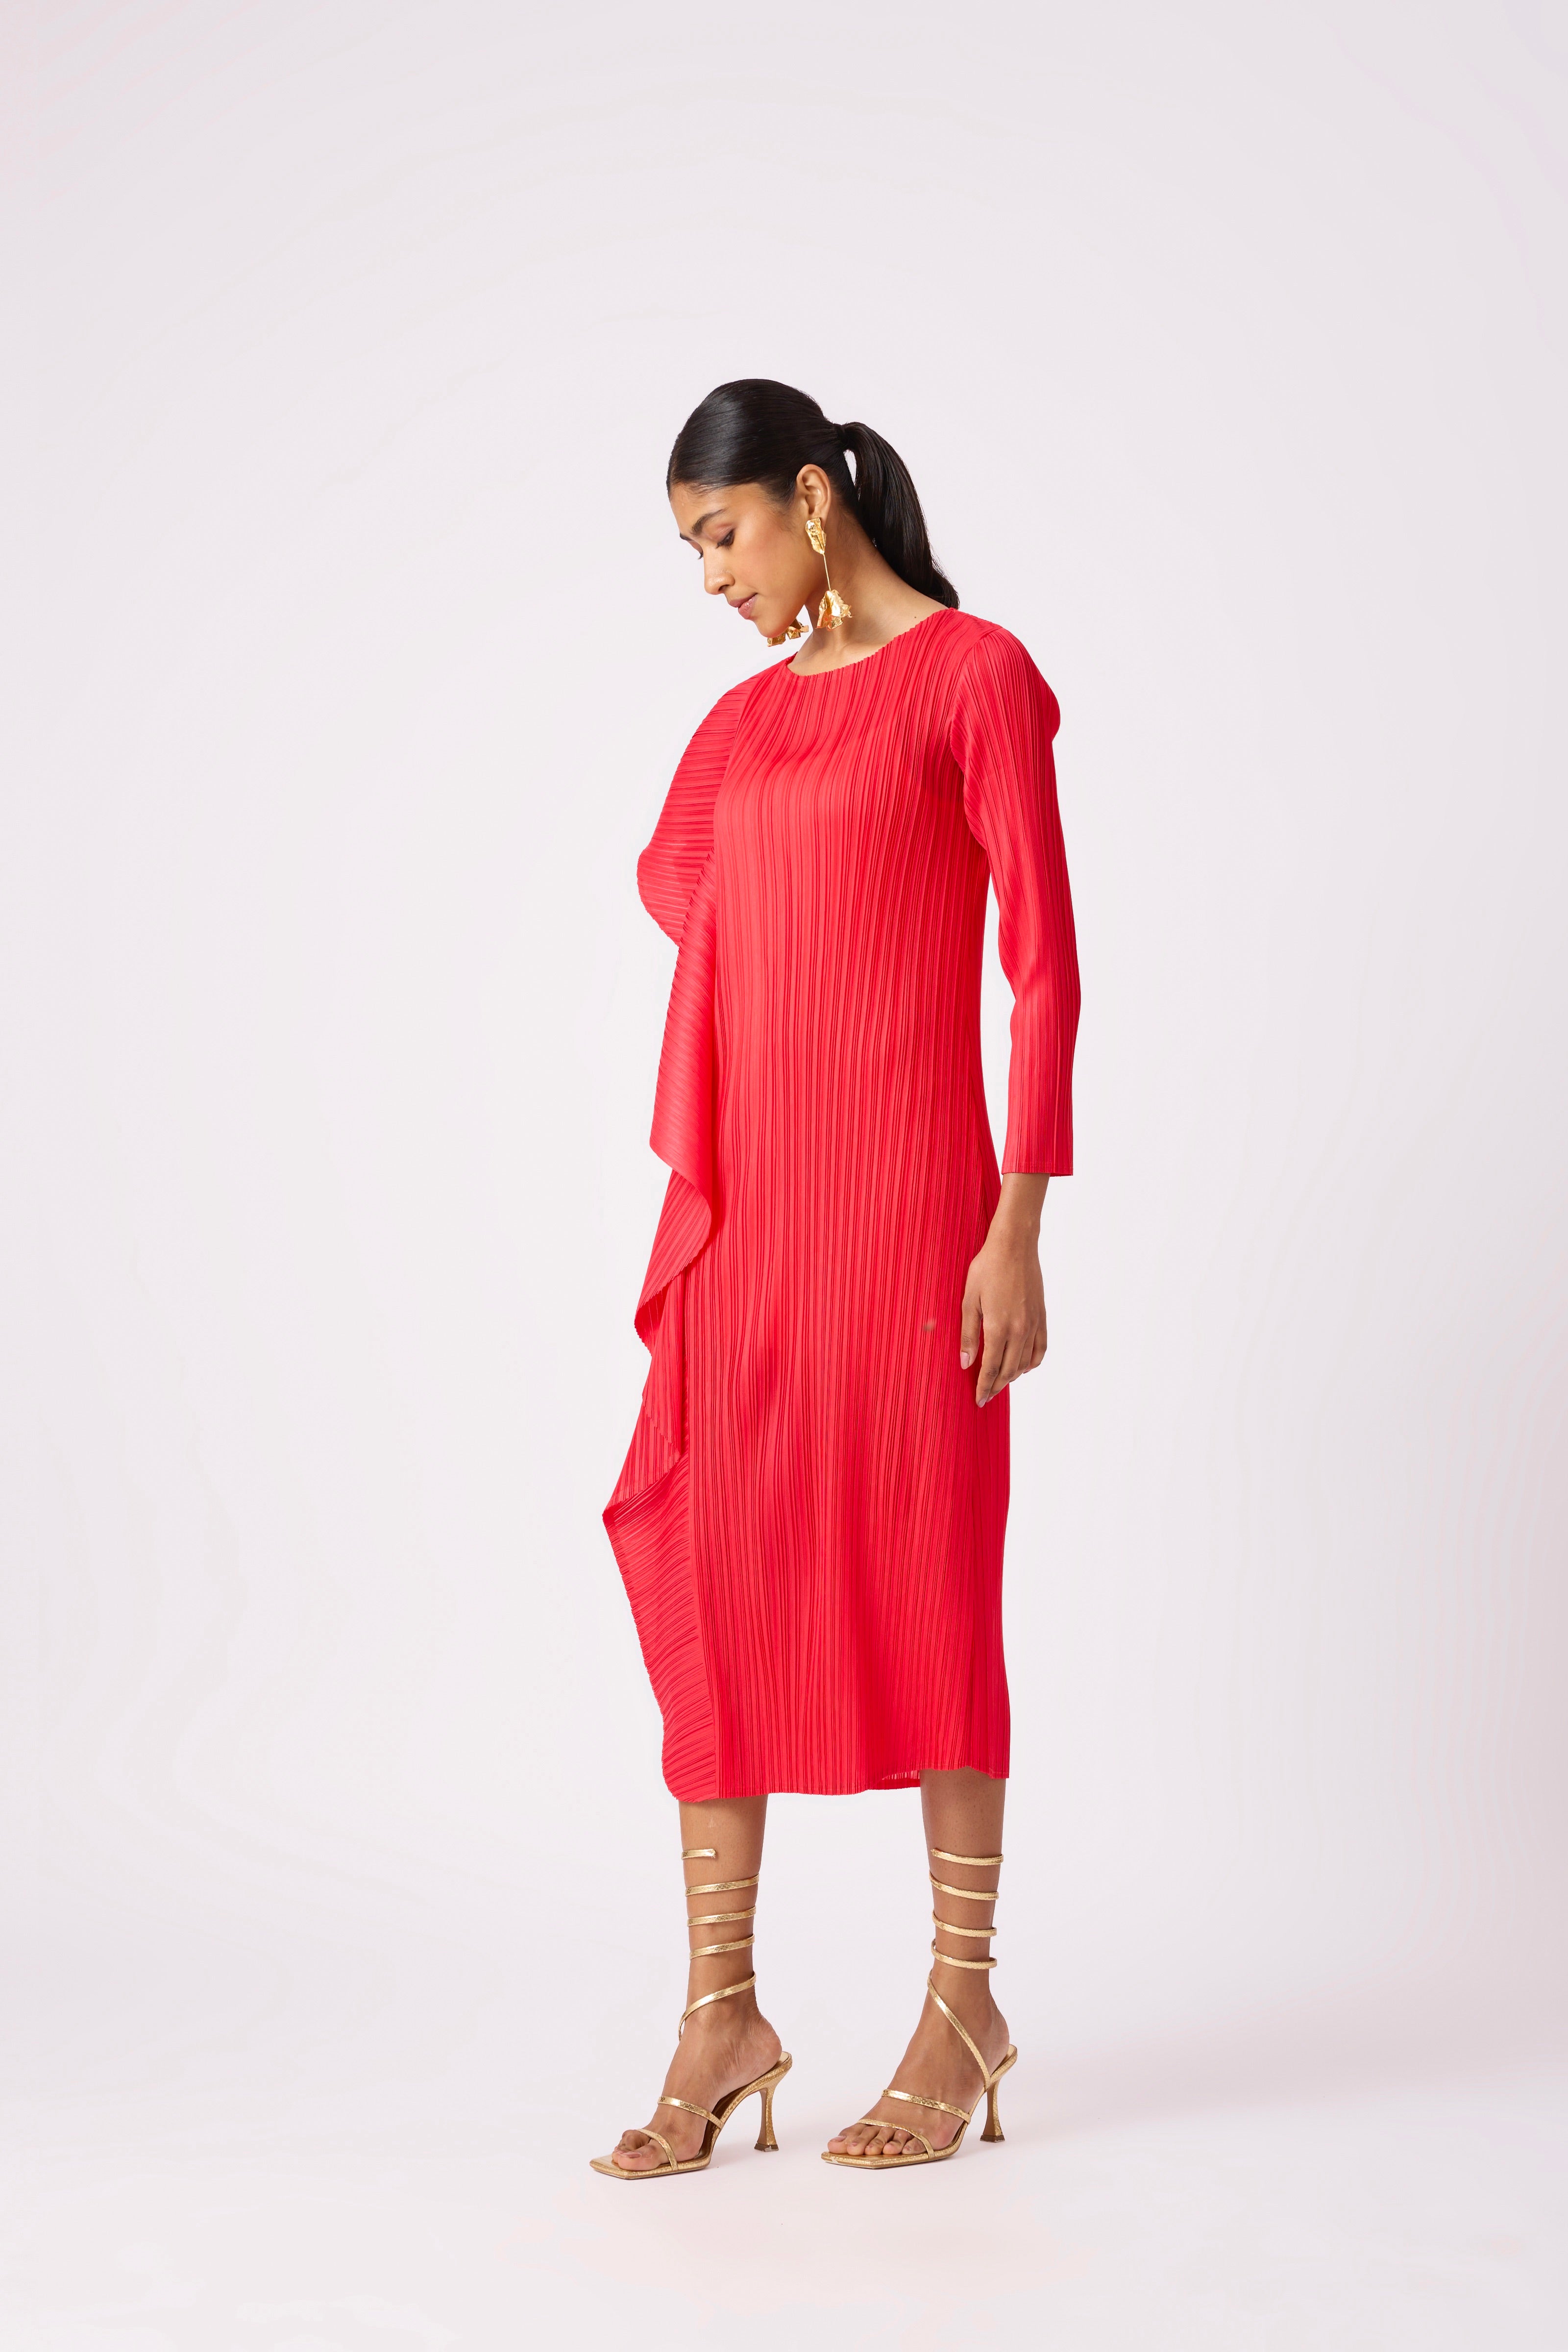 Serena Ruffle Dress - Crimson Red